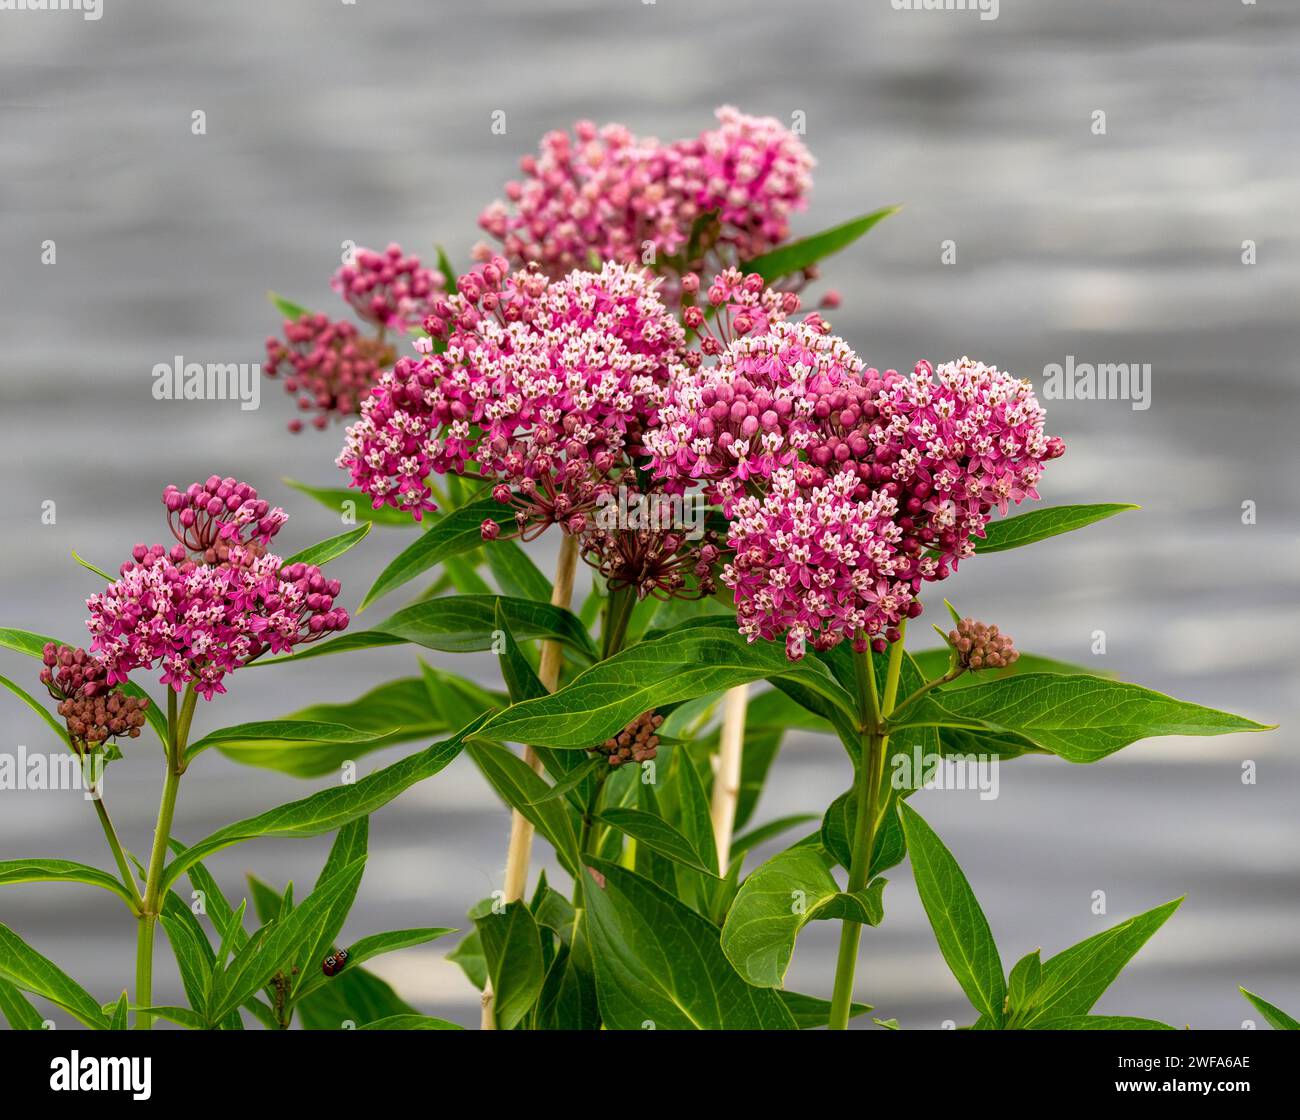 A cluster of Swamp Milkweed flowers at the peak of their blooming season in mid Summer. Stock Photo